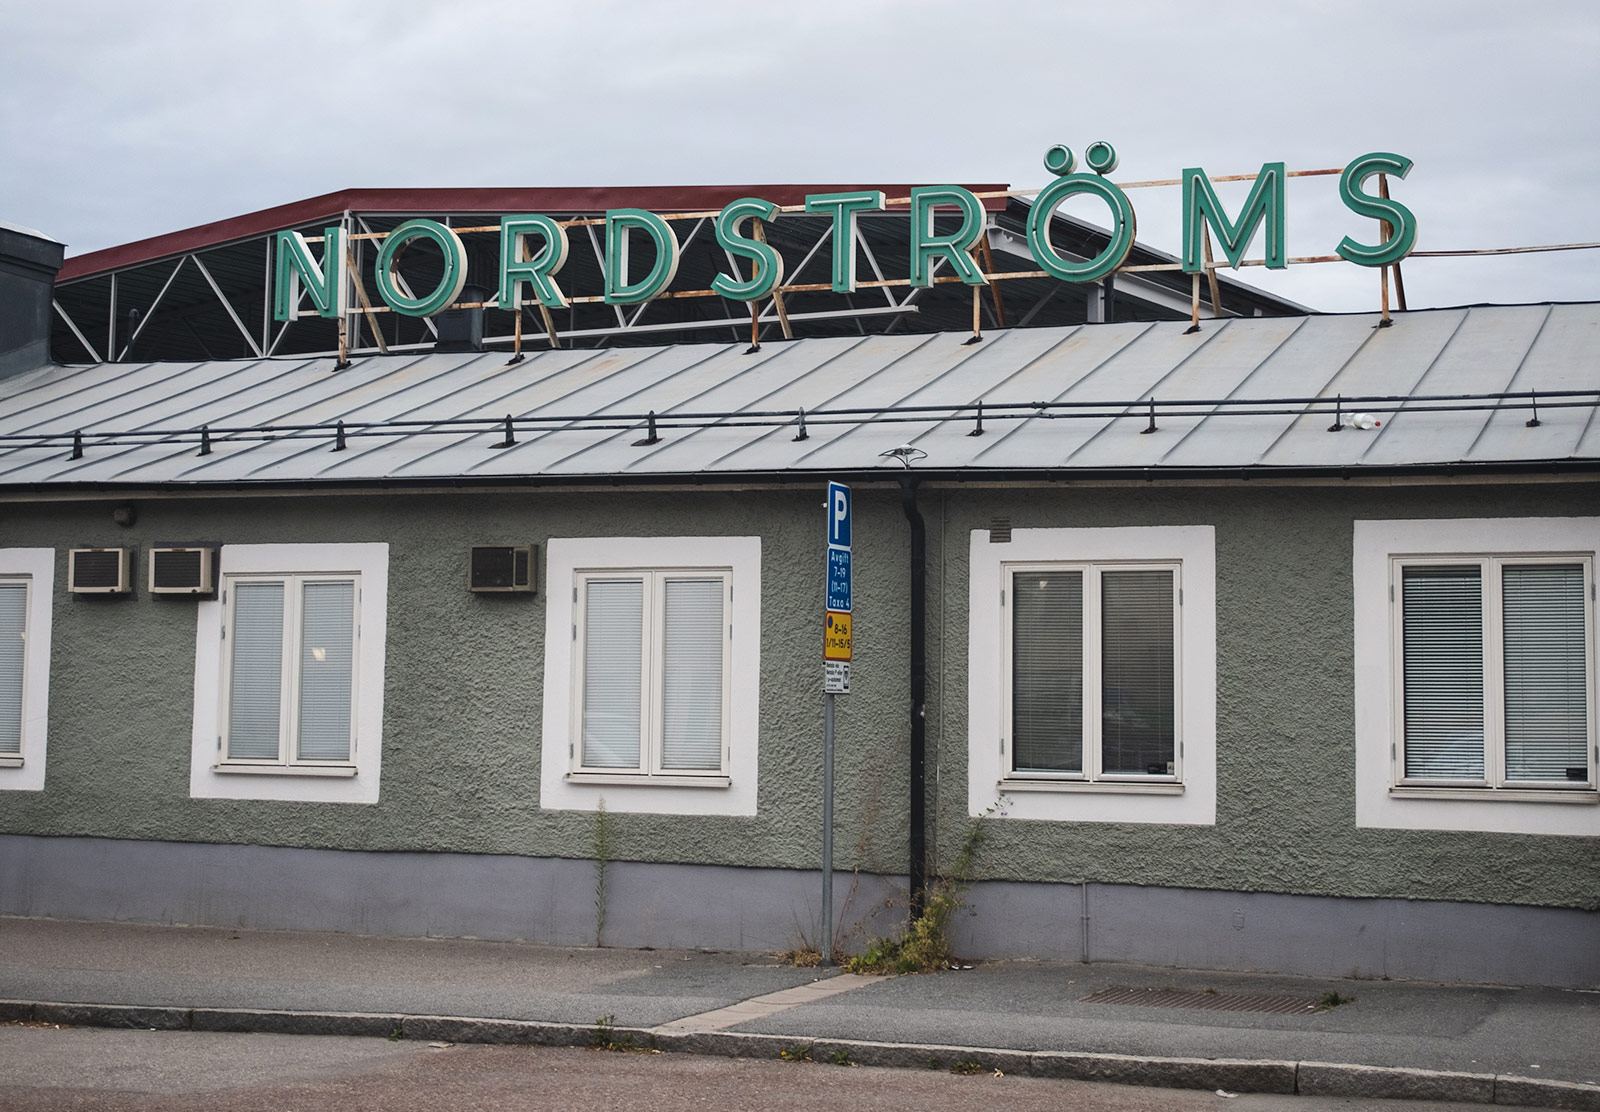 Nordströms sign